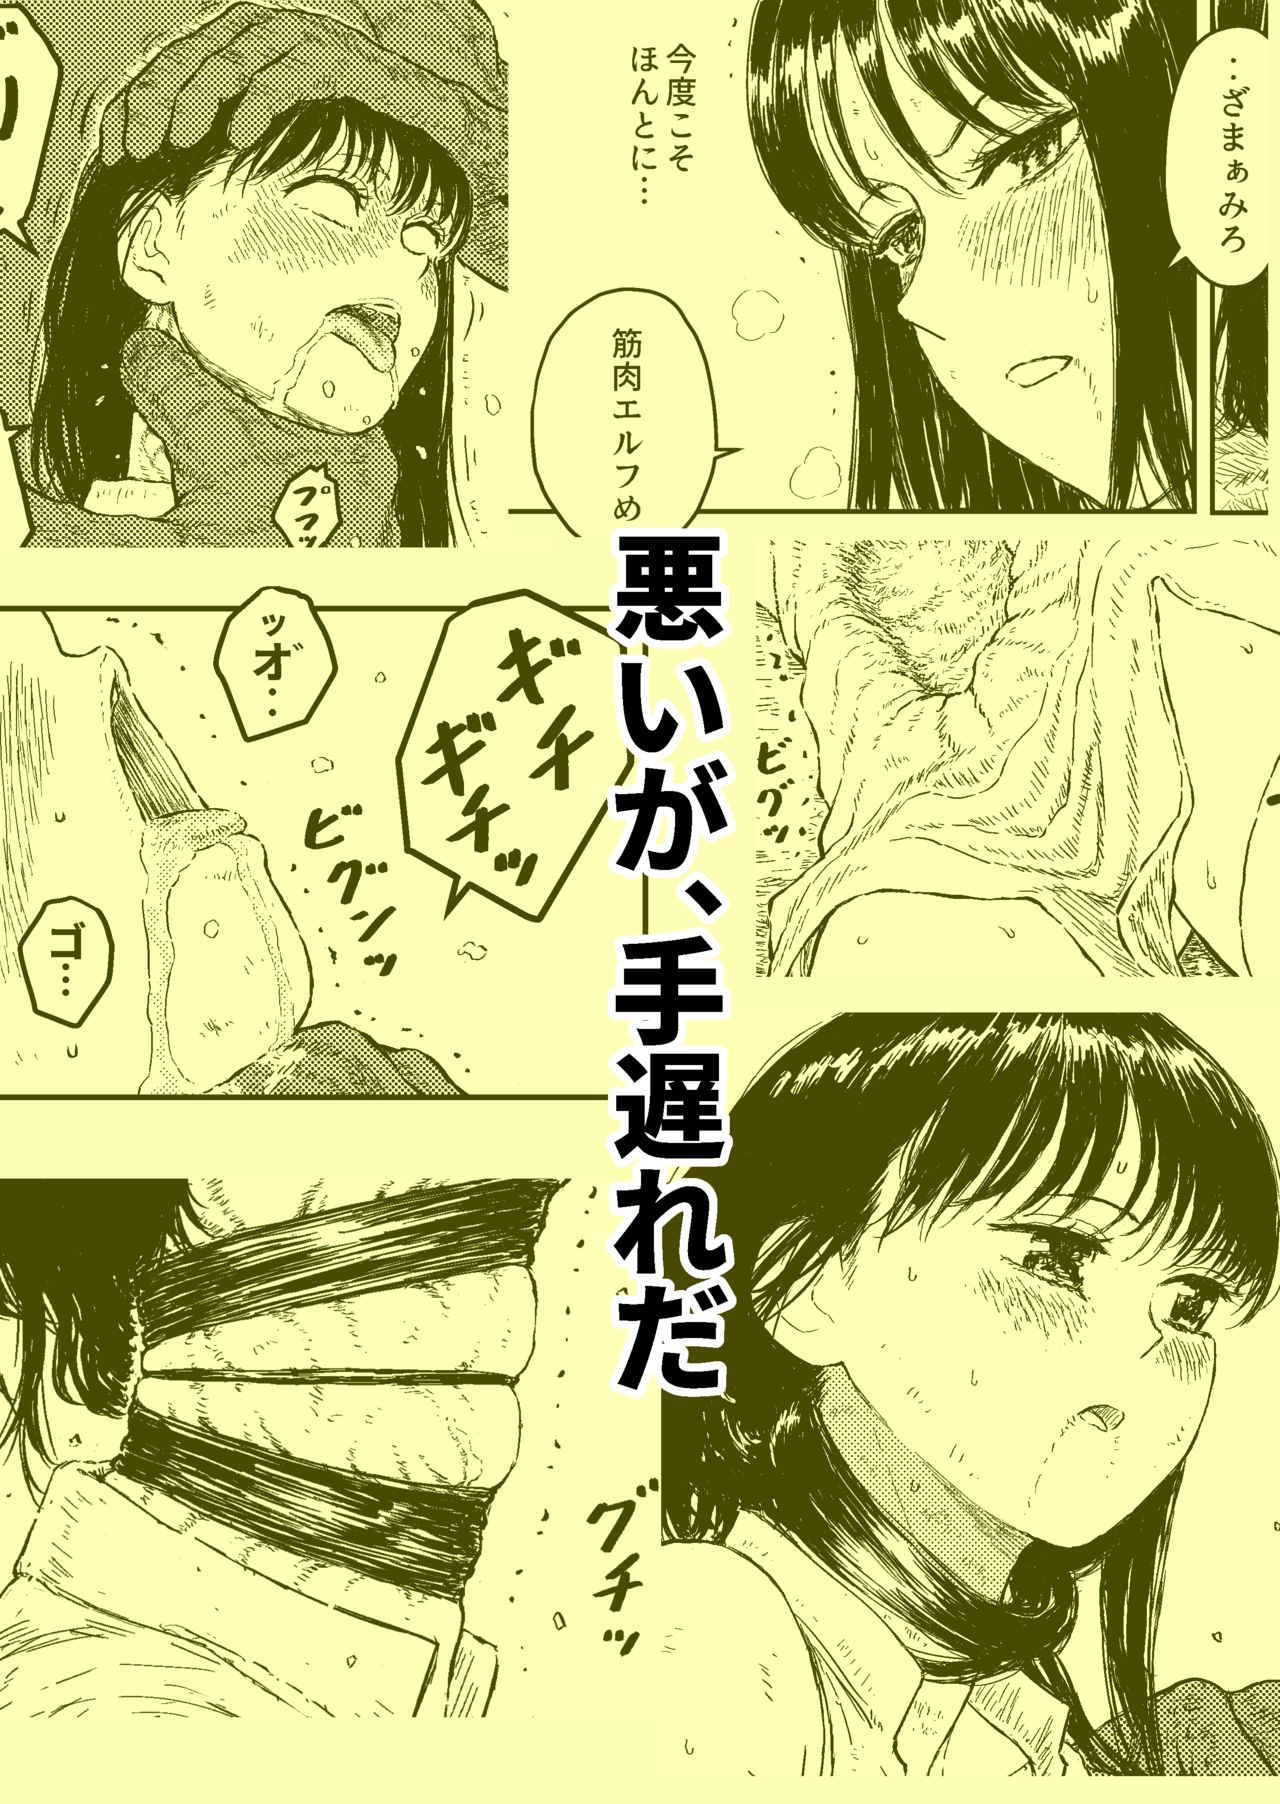 [Blue Percussion] Sutoranguru Gold 4  『Seigi no hiroin kosatsu subete o kake te tataka ta shojo no unmei』 page 29 full